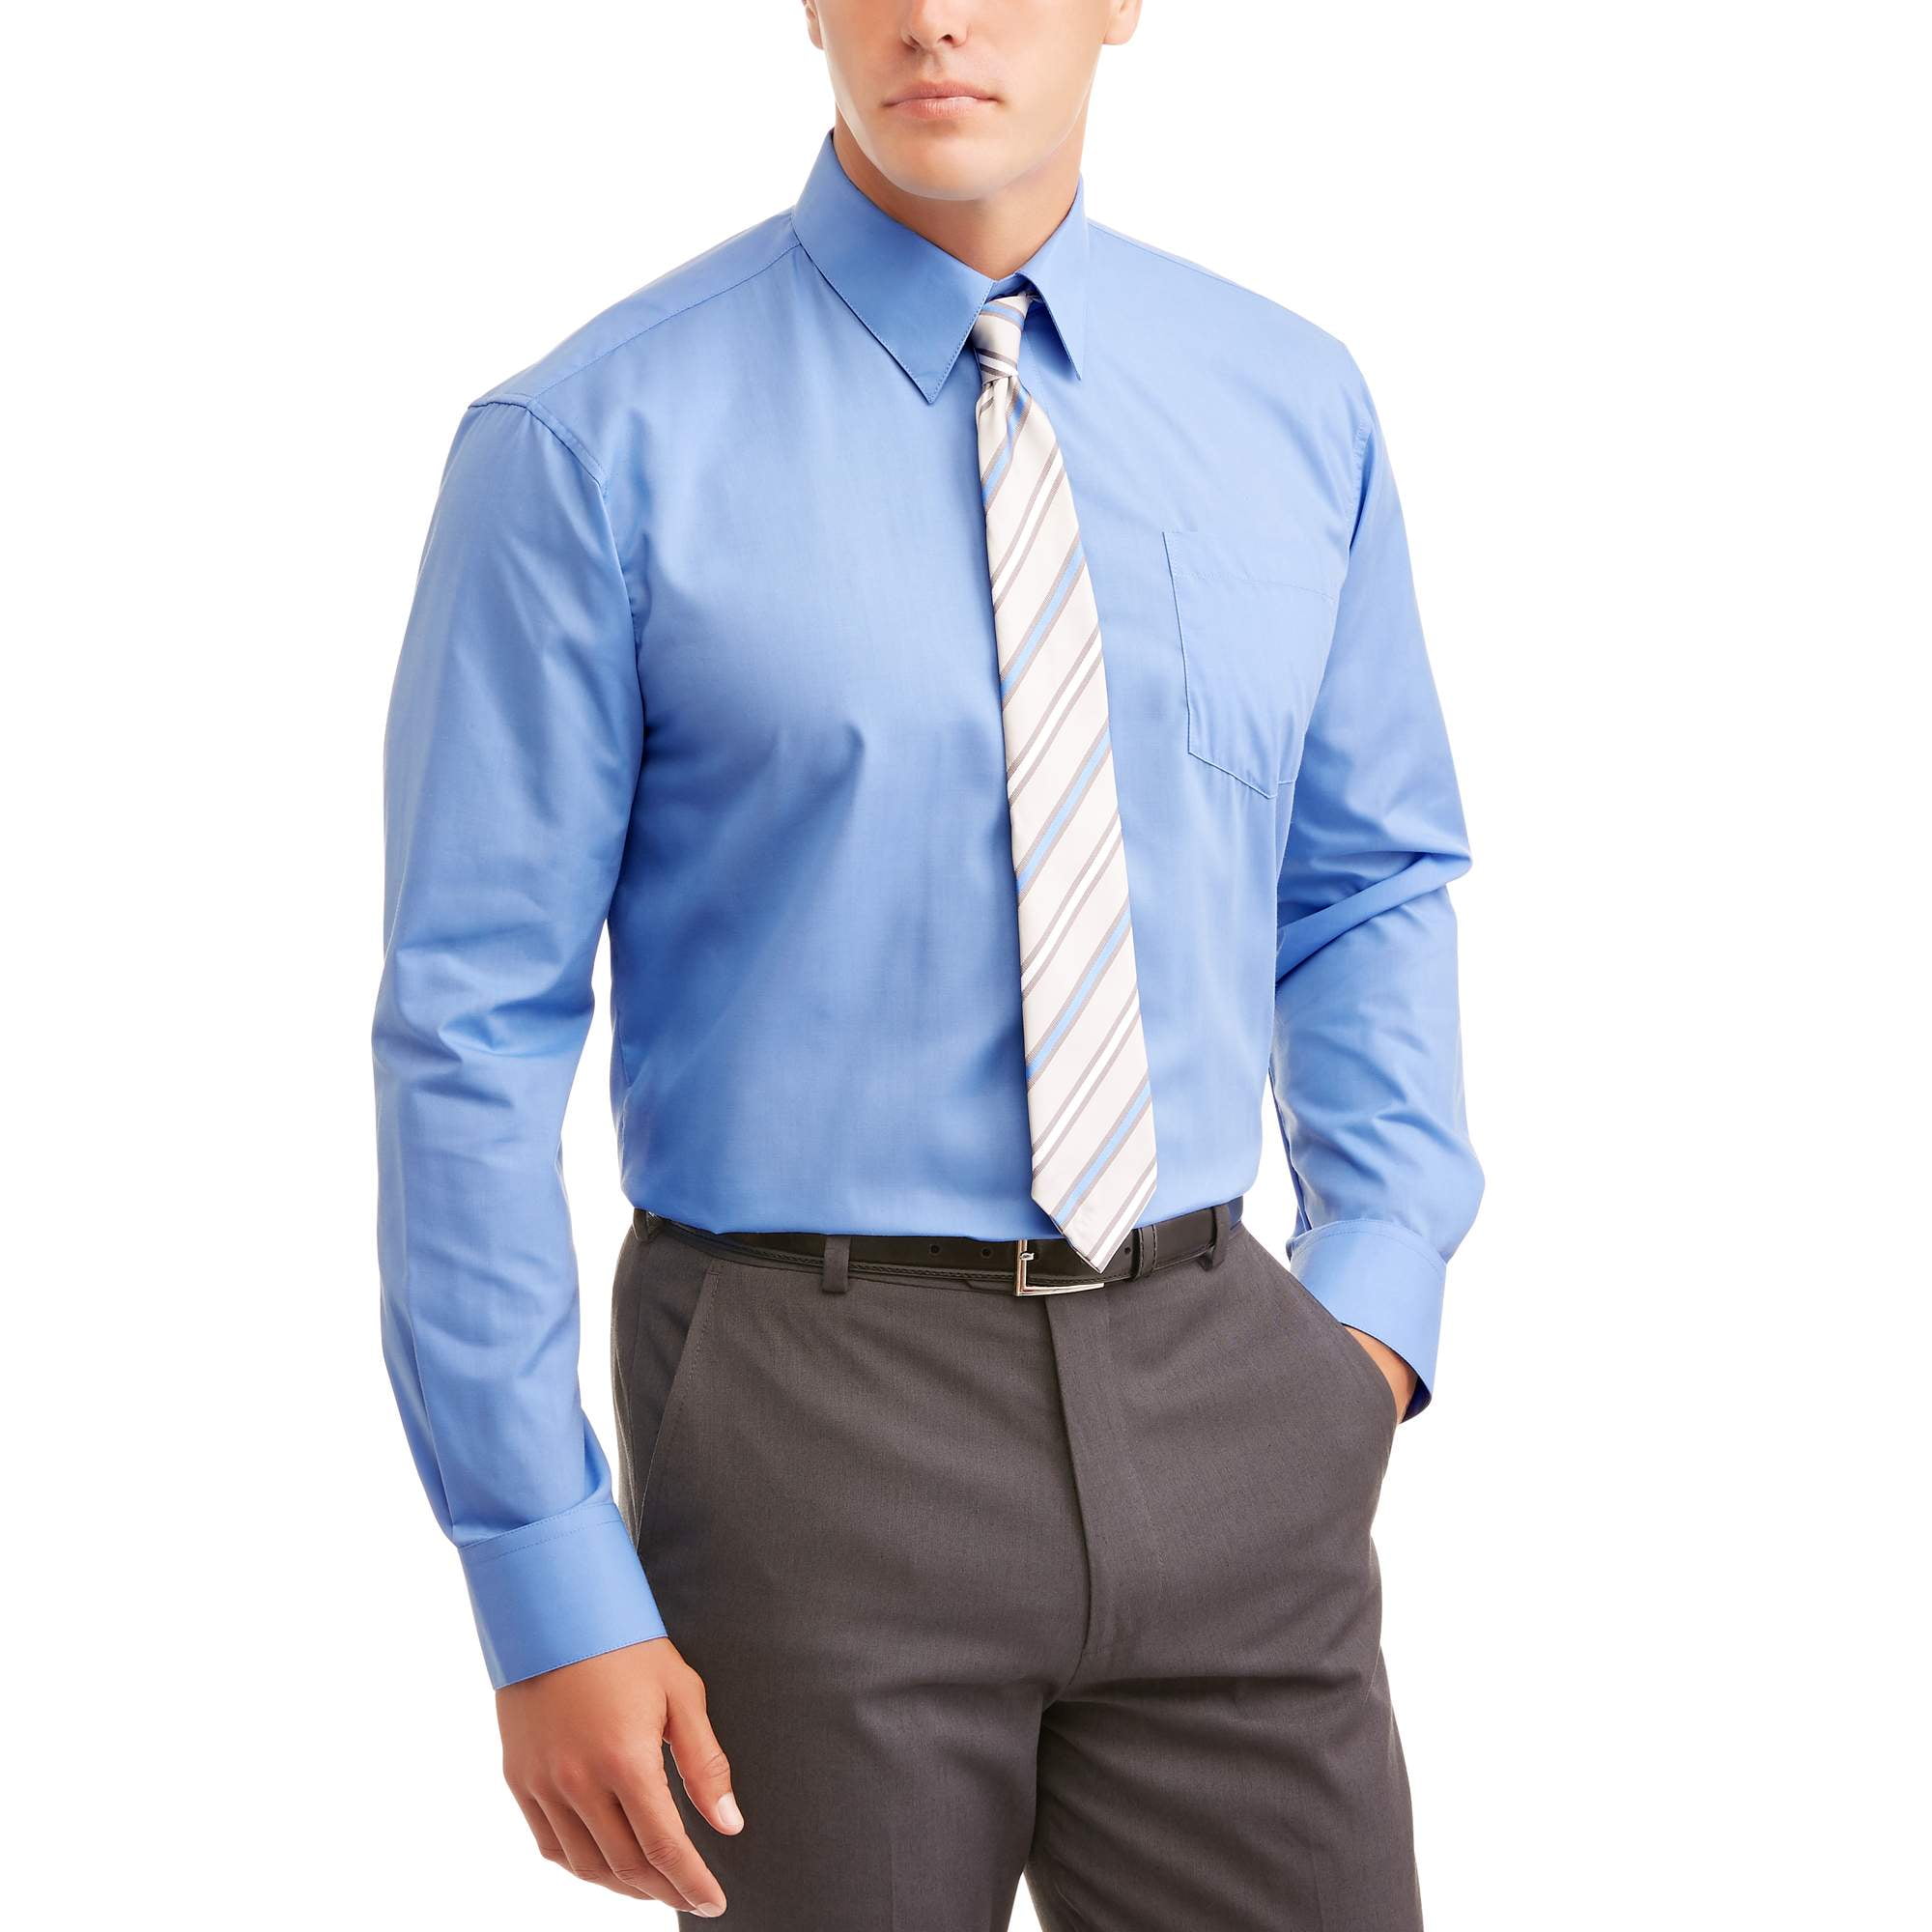 Men's Dress shirt with Tie - Walmart.com